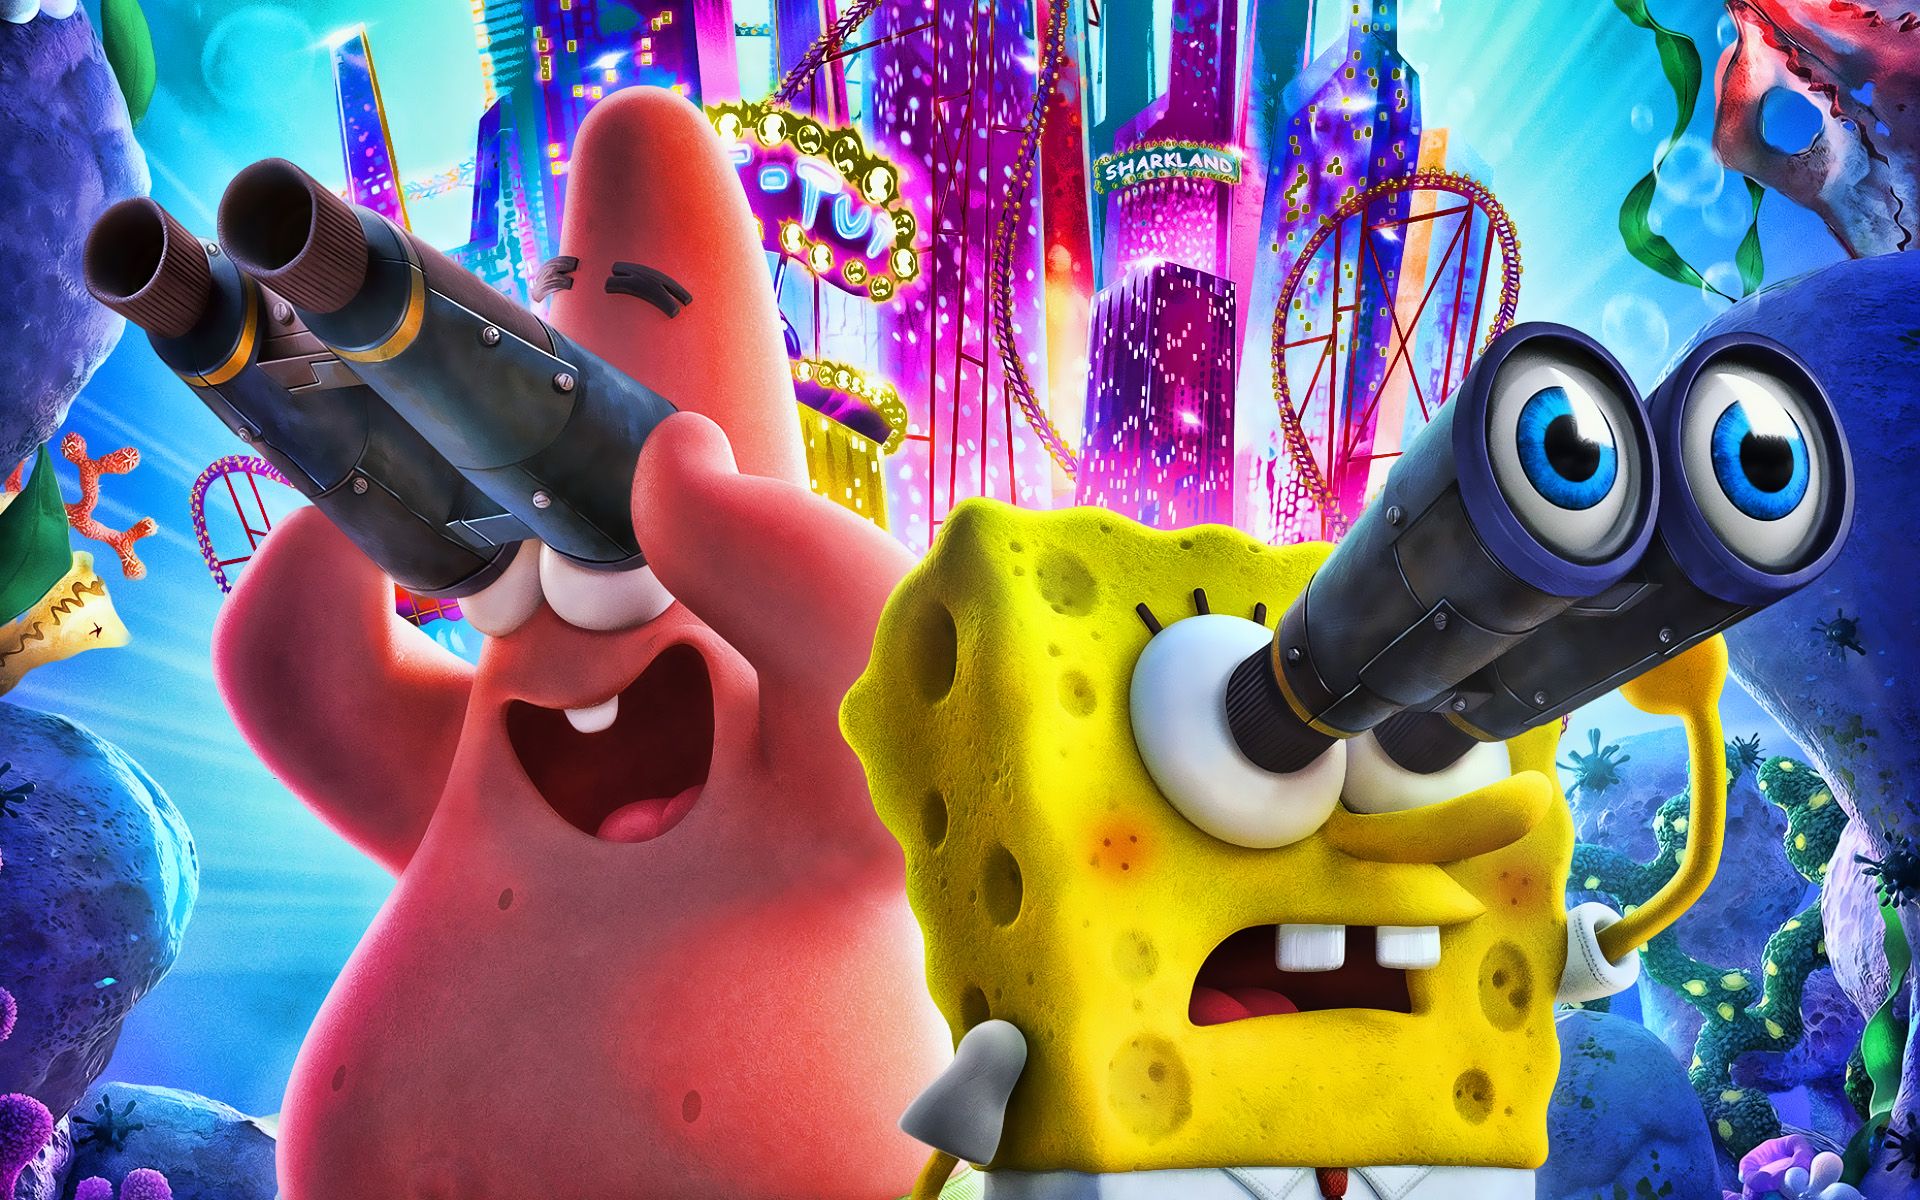 Download wallpaper SpongeBob SquarePants, Patrick Star, 2020